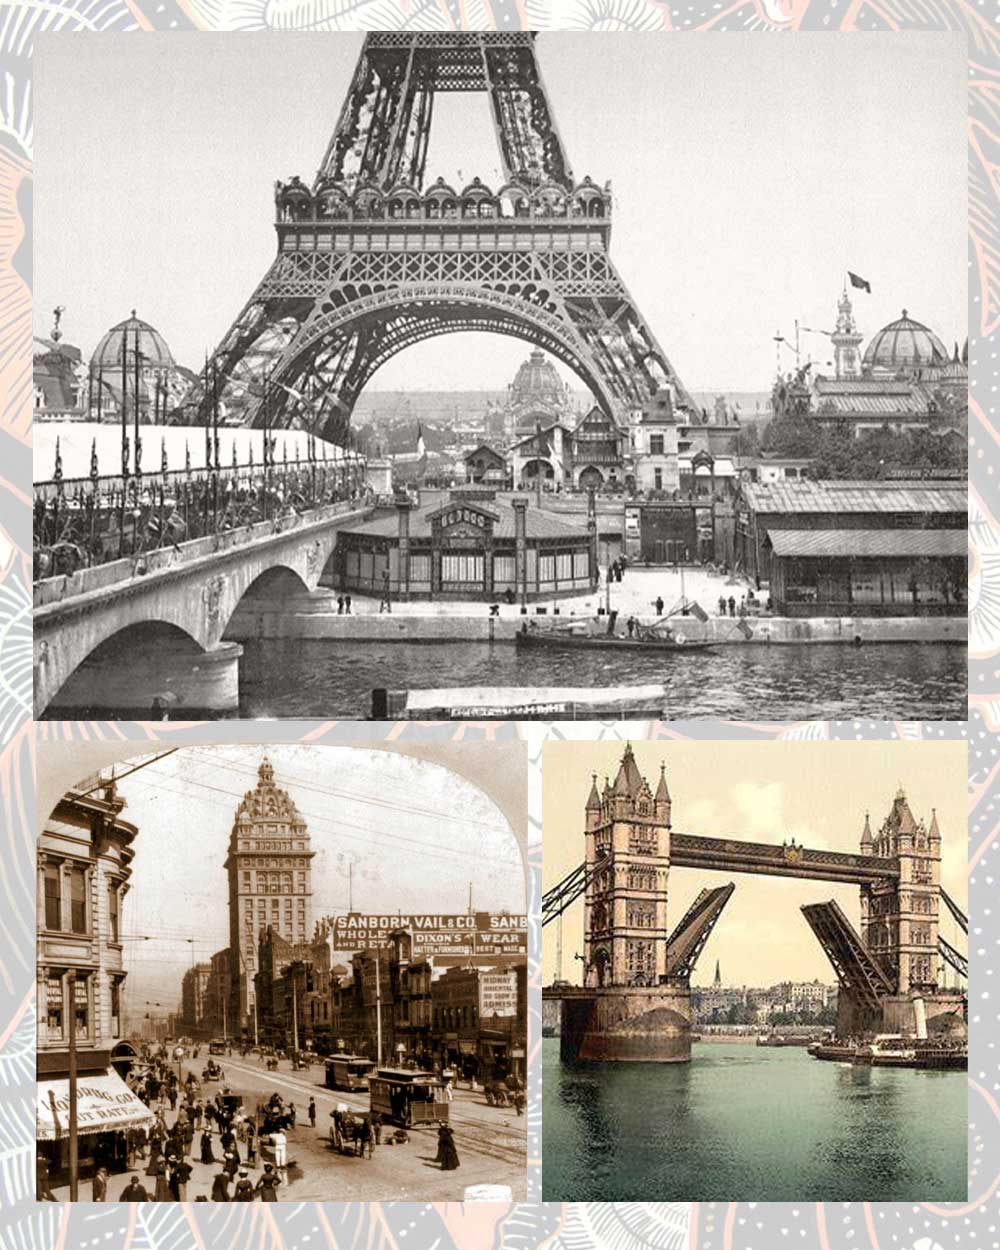 Important bohemian places: London, Paris, San Fransisco